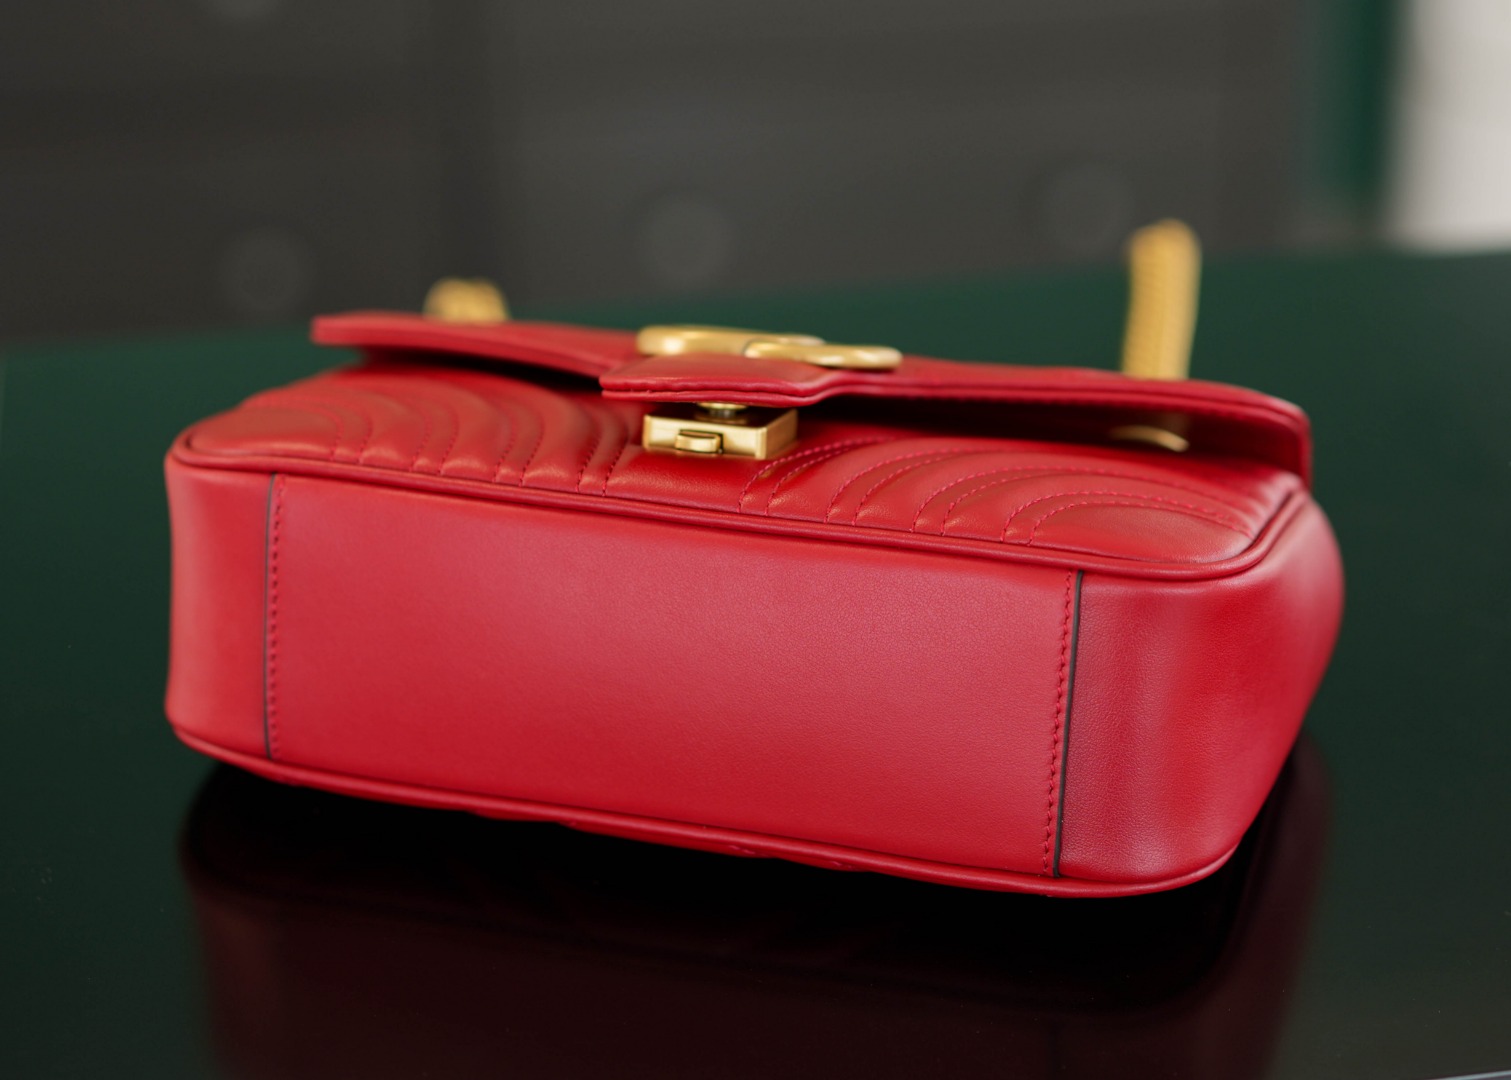 正品级Marmont系列肩背包经典款红色22cm原厂皮全铜五金正品售价18.000独家原厂皮发售限量级别